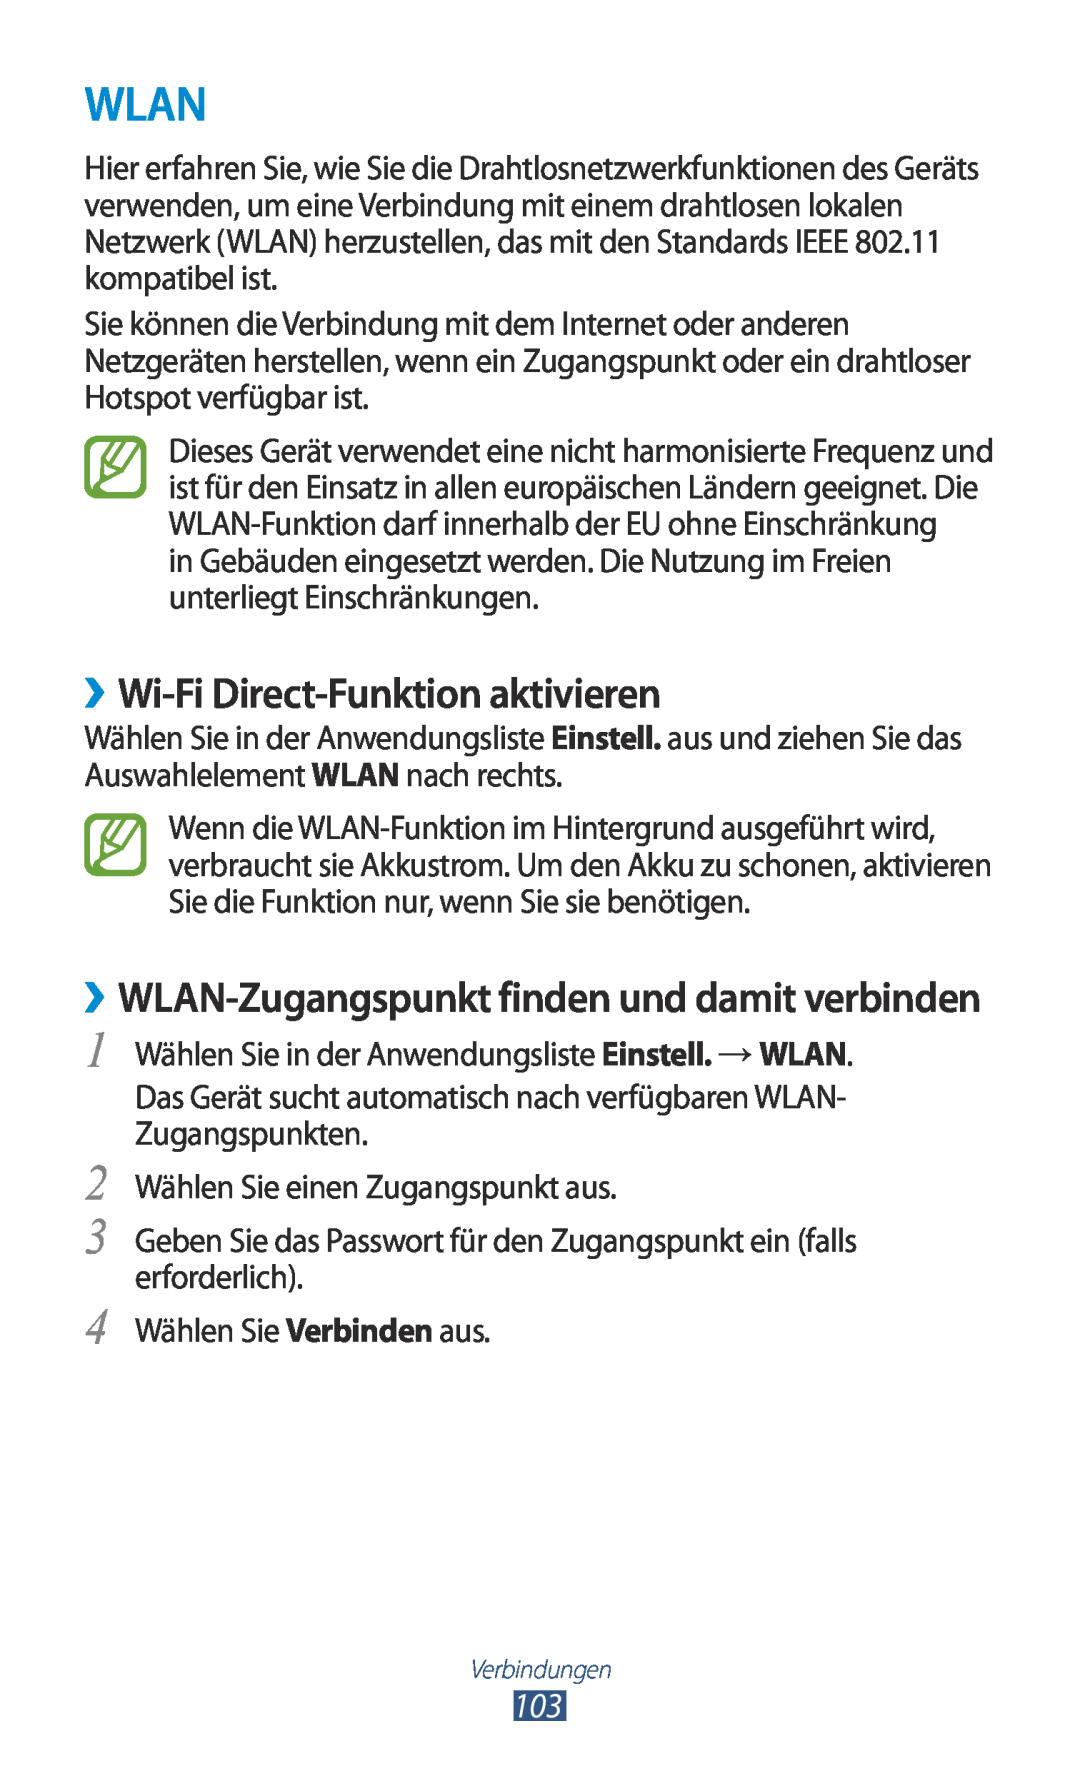 Samsung GT-P5100TSATMN manual Wlan, ››Wi-Fi Direct-Funktion aktivieren, ››WLAN-Zugangspunkt finden und damit verbinden 